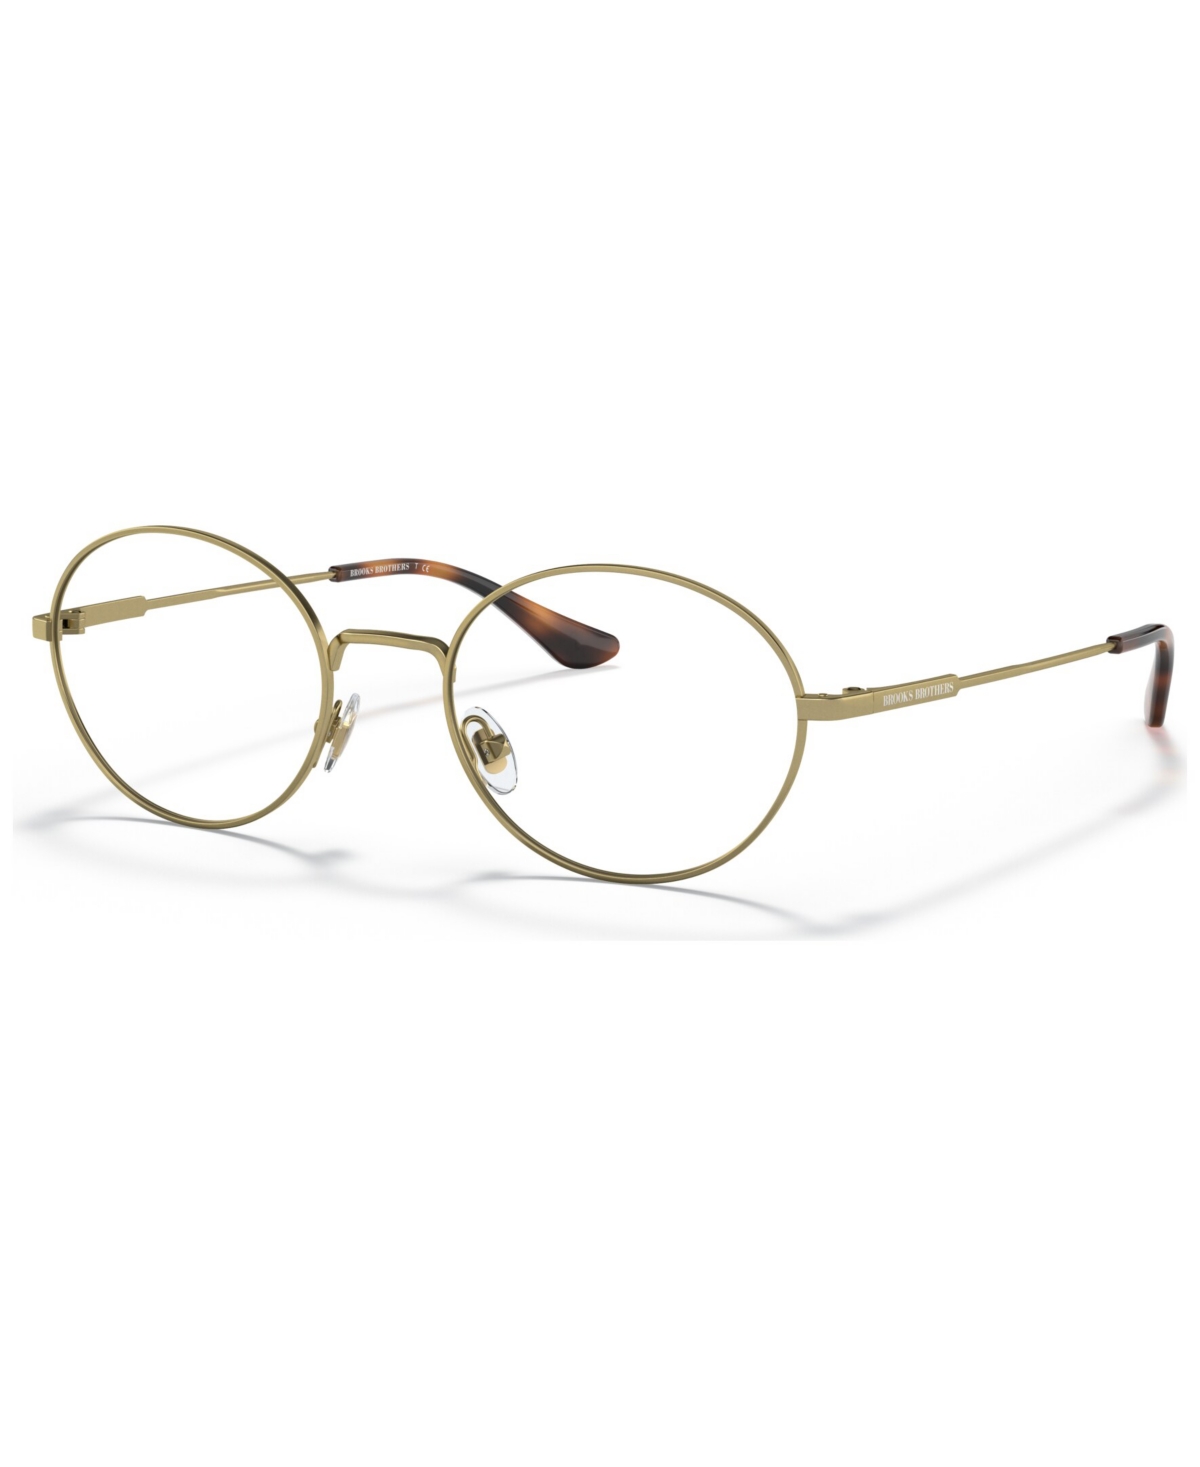 Men's Oval Eyeglasses, BB109752-o - Brushed Bronze